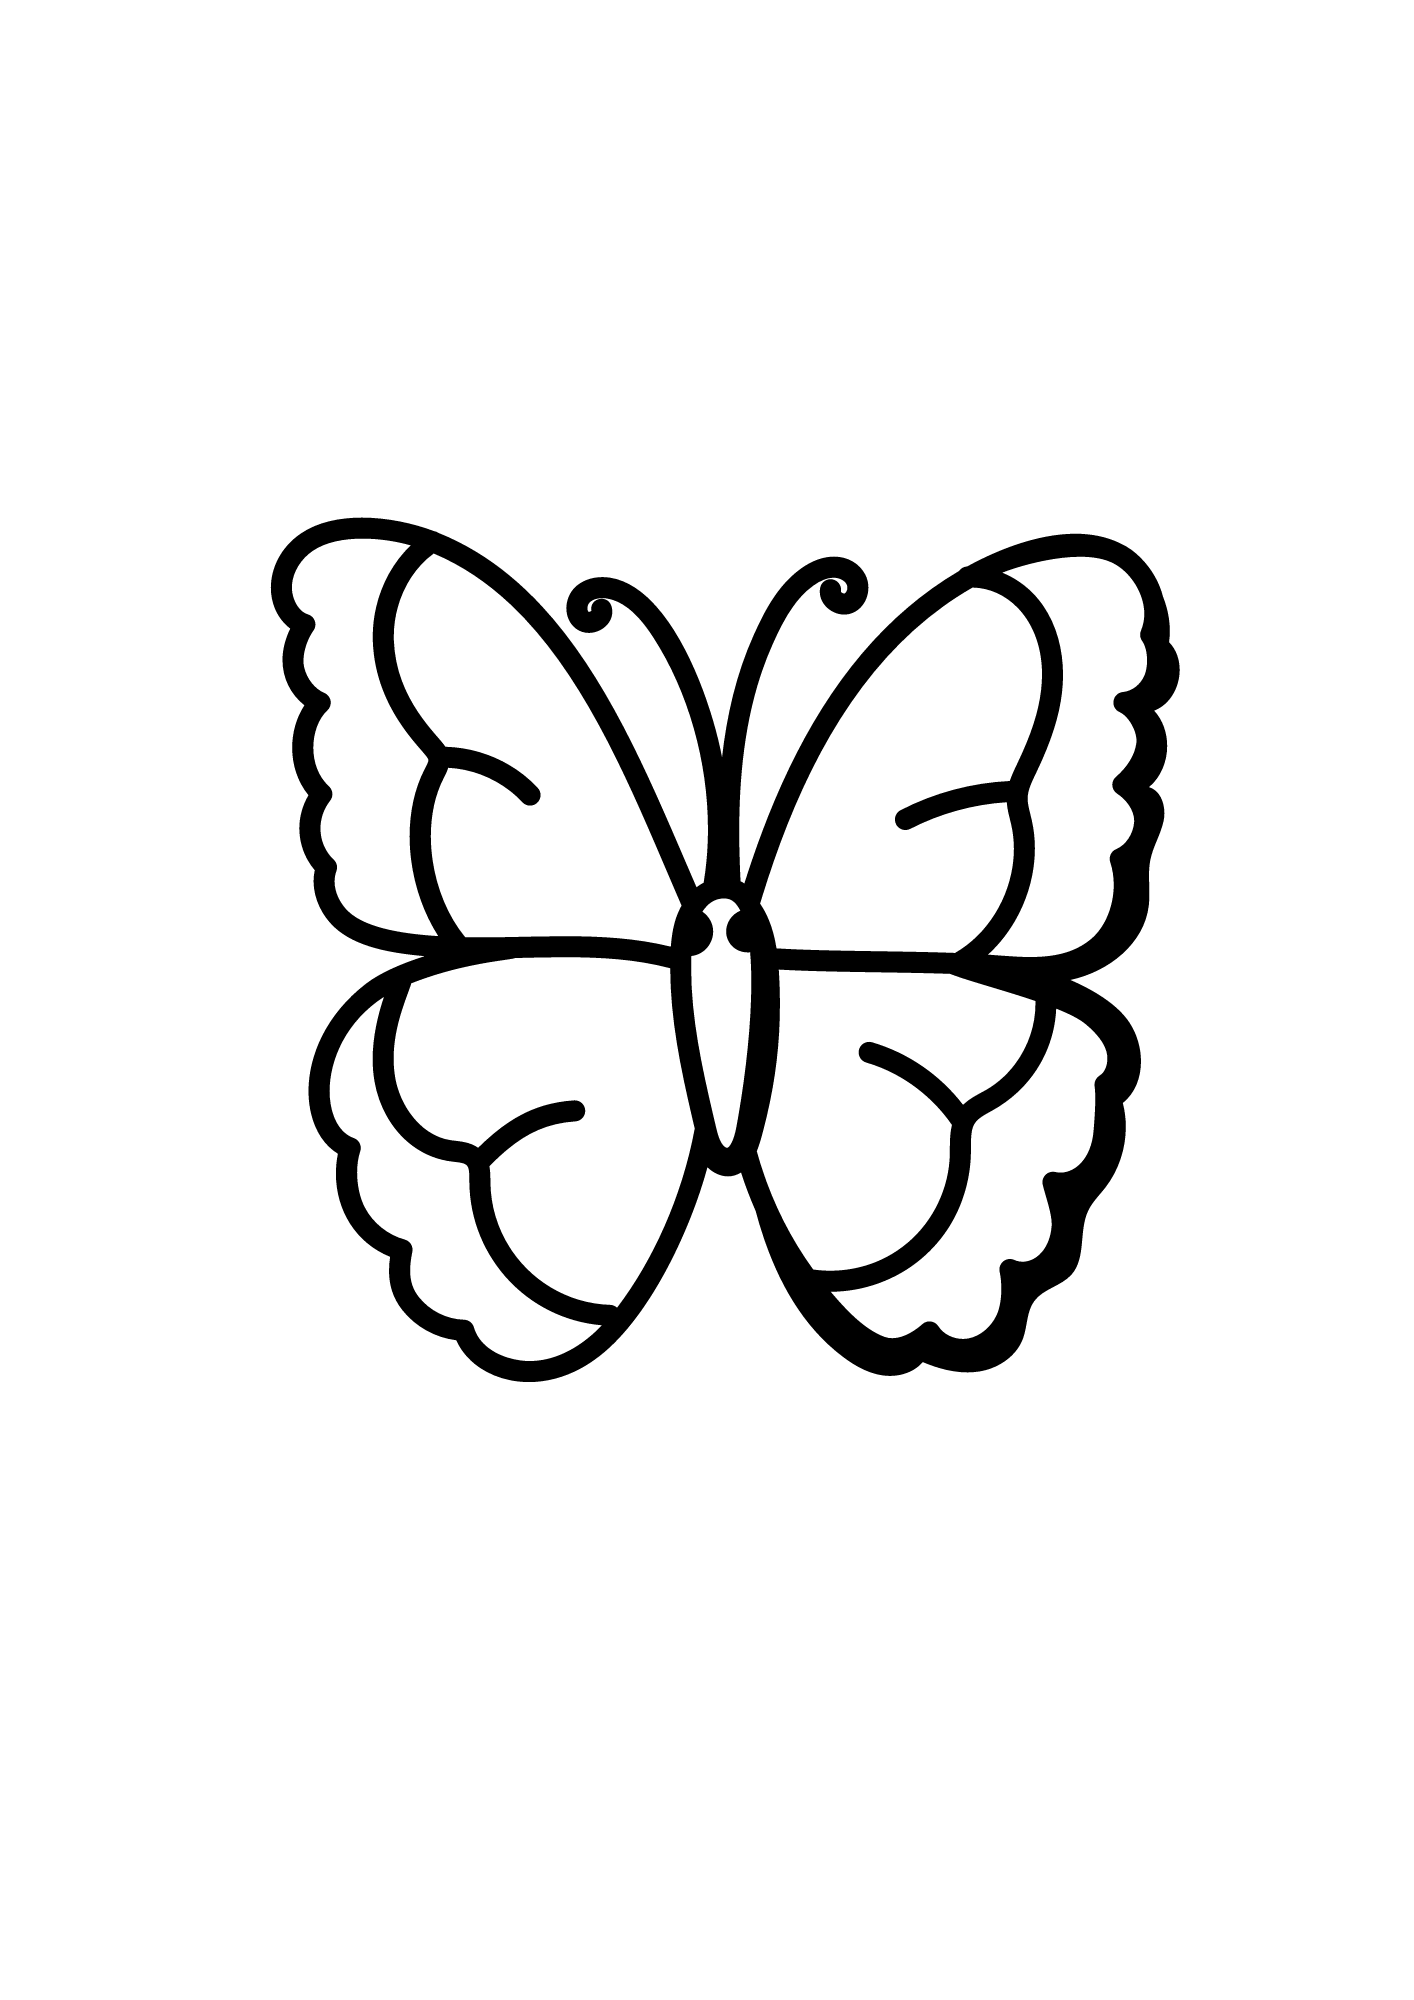 Borboleta para colorir: 45 borboleta para colorir e imprimir